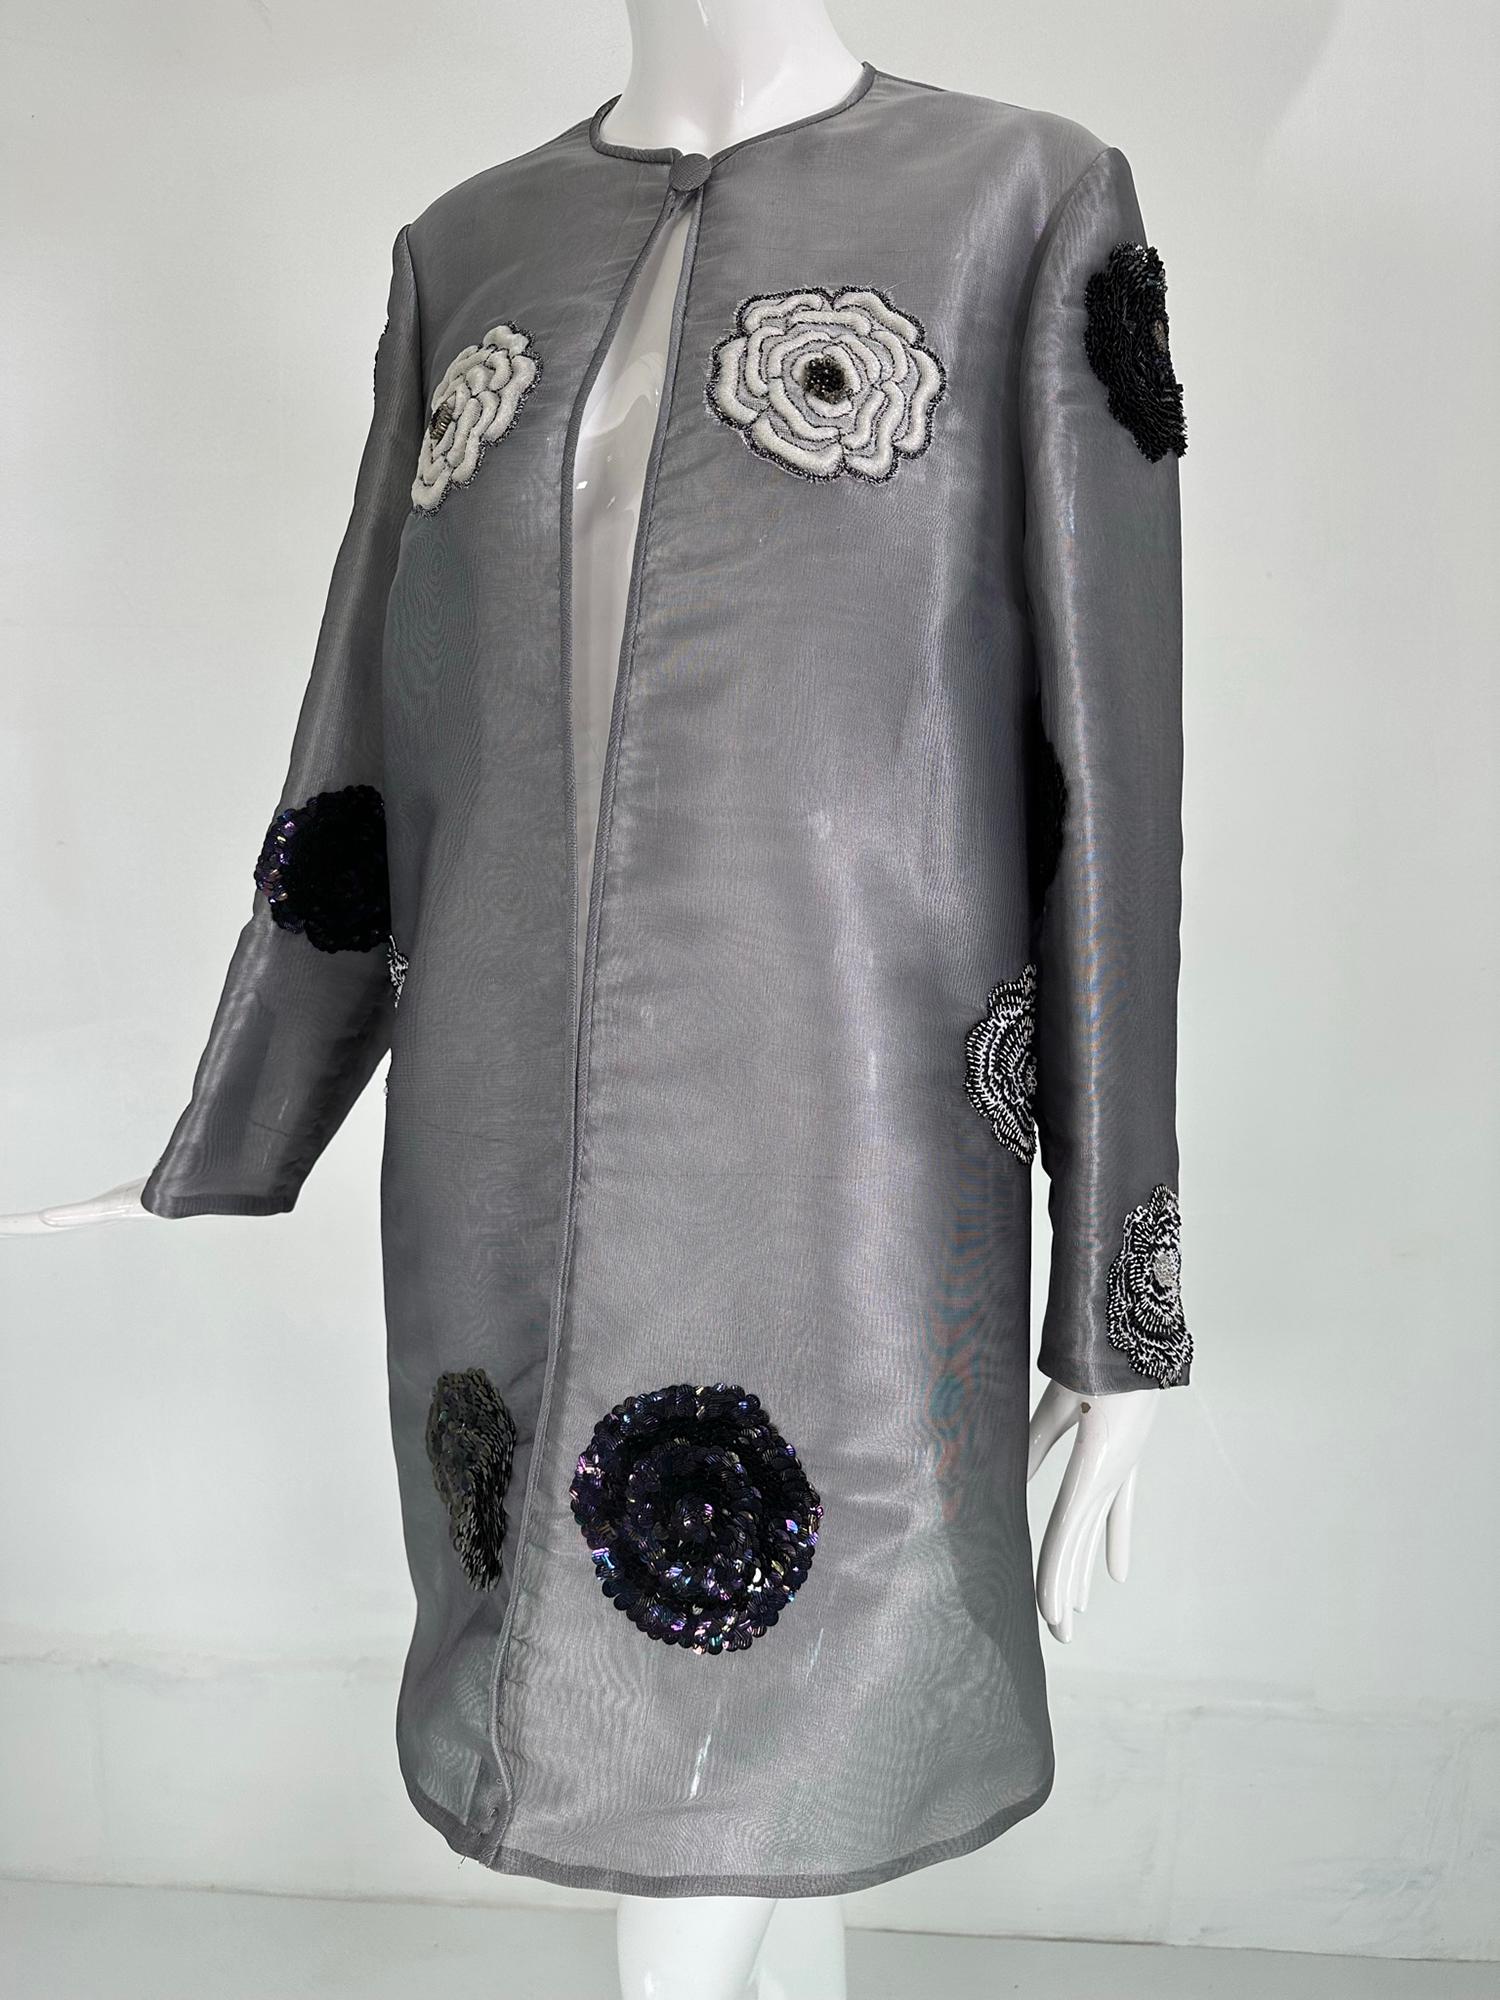 Manteau de soirée en organza de soie grise, brodé de perles, de paillettes et de cercles. Manteau en organza gris transparent avec des cercles rembourrés qui sont recouverts de paillettes, de perles ou de broderies de différentes couleurs et de